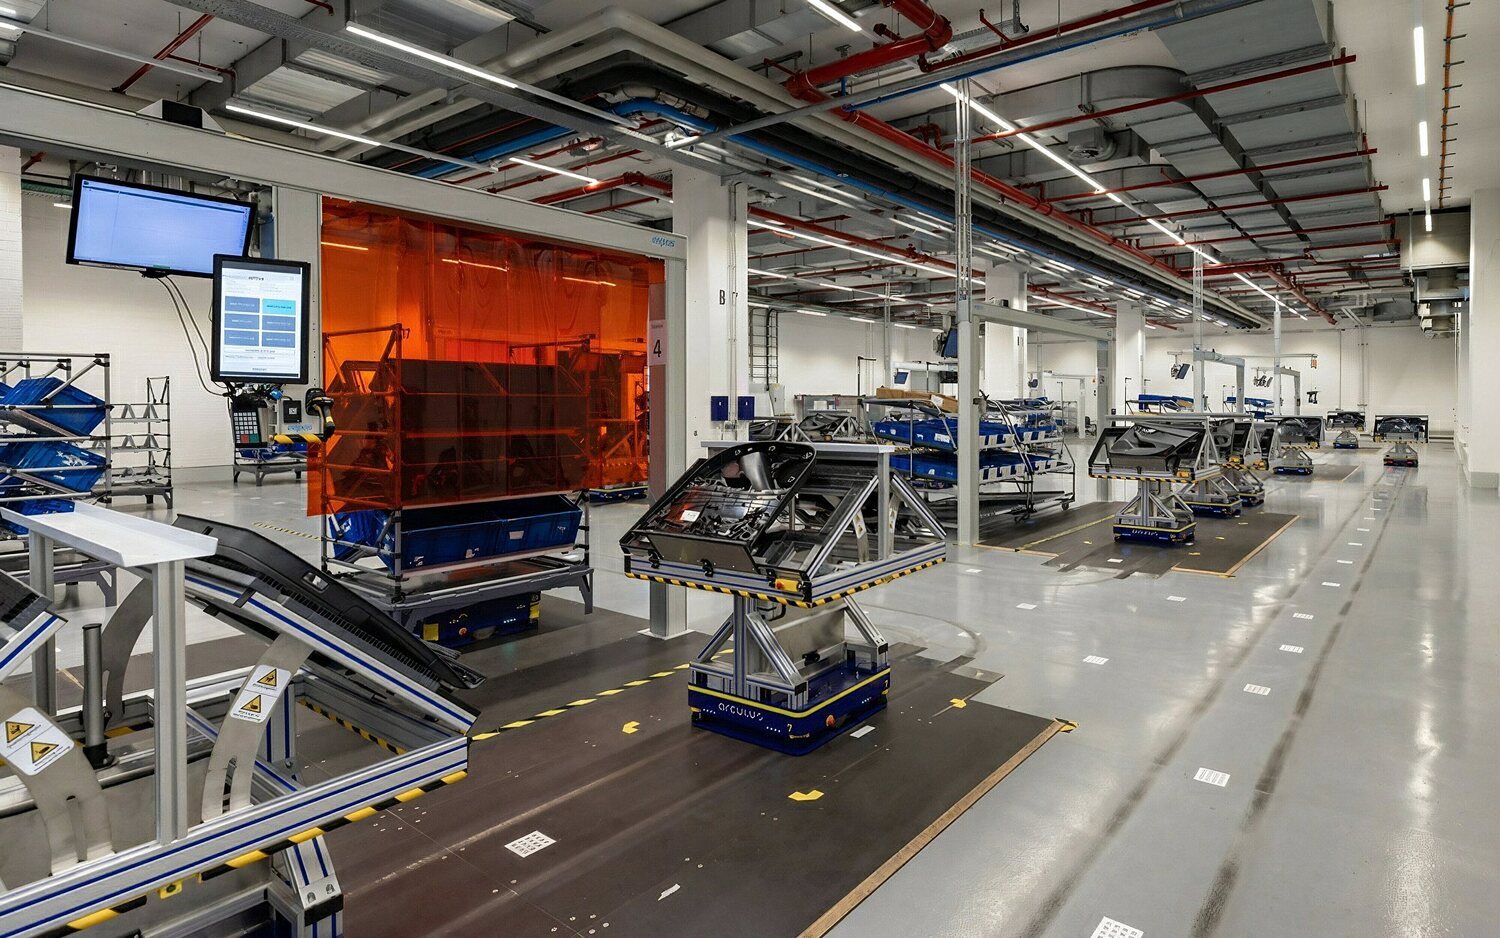 Audi renueva su sistema de producción con la fabricación modular